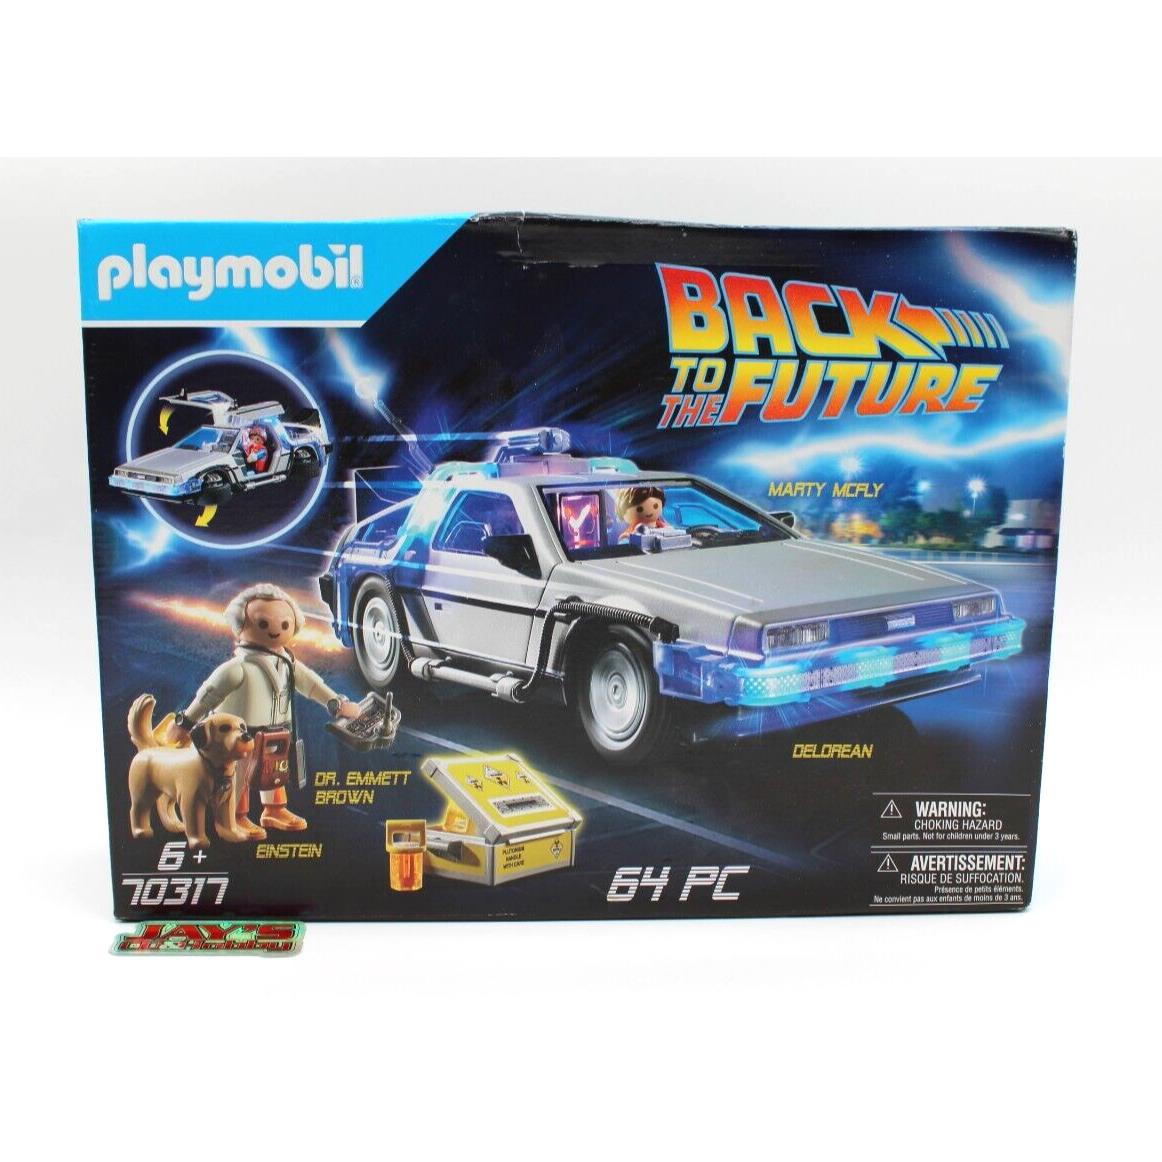 Playmobil Back to The Future Box-set 64 PC 2020